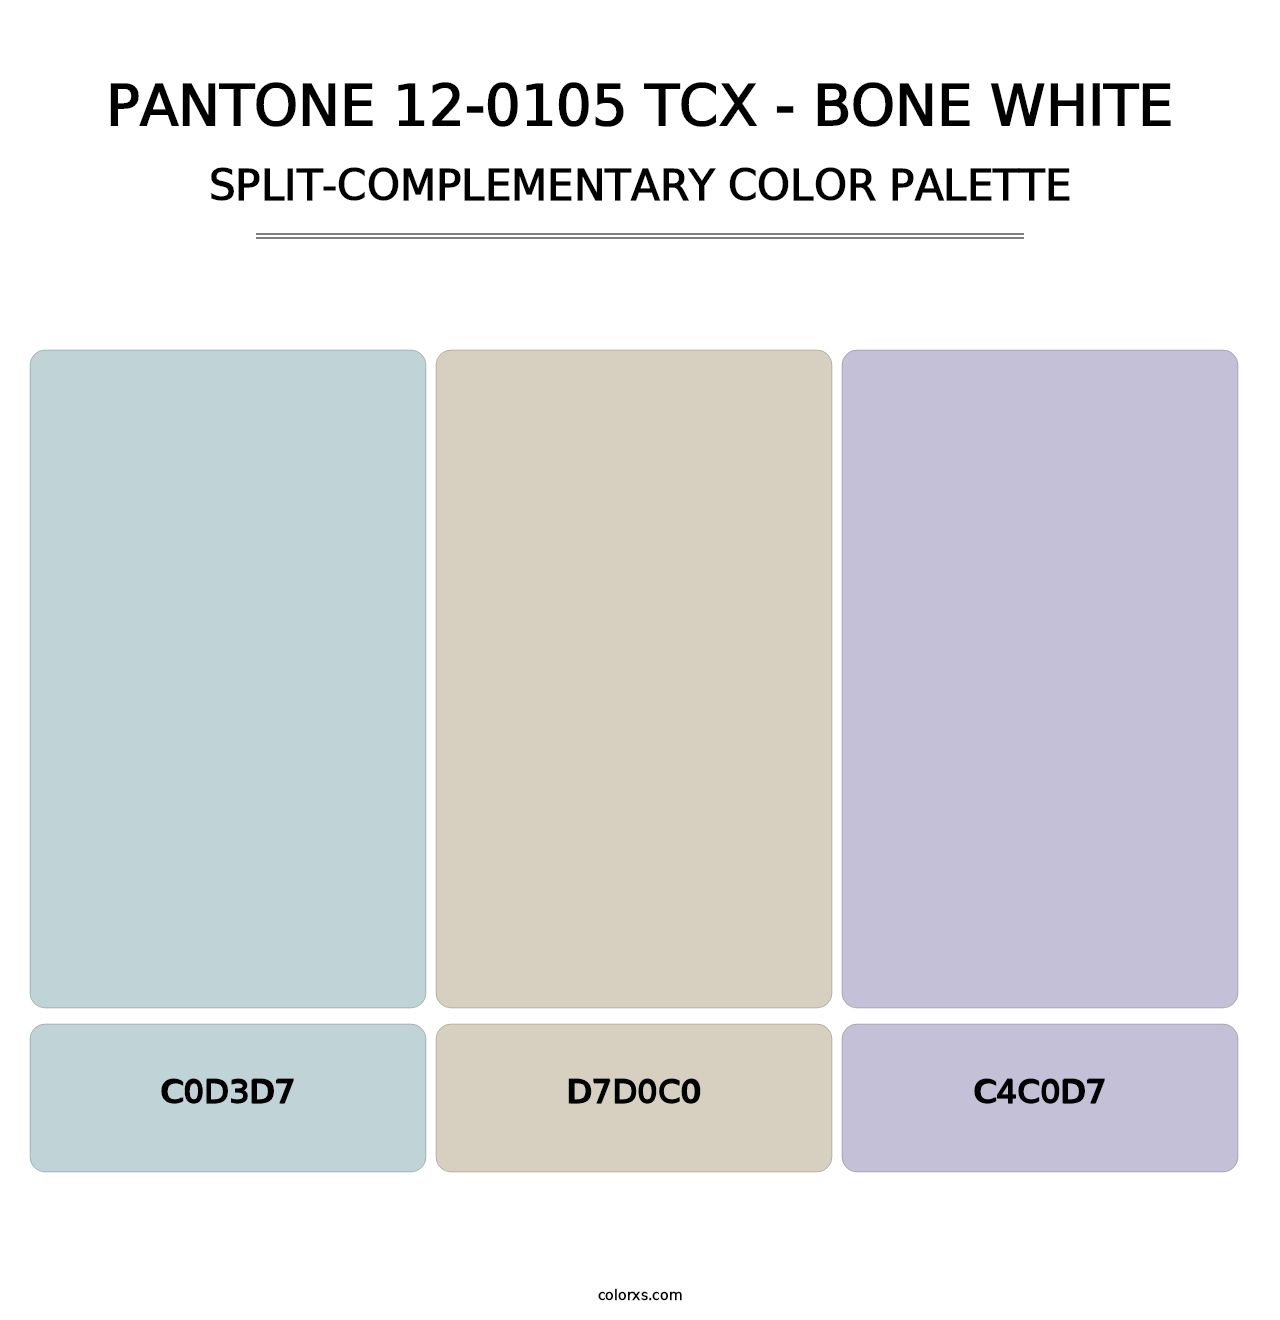 PANTONE 12-0105 TCX - Bone White - Split-Complementary Color Palette